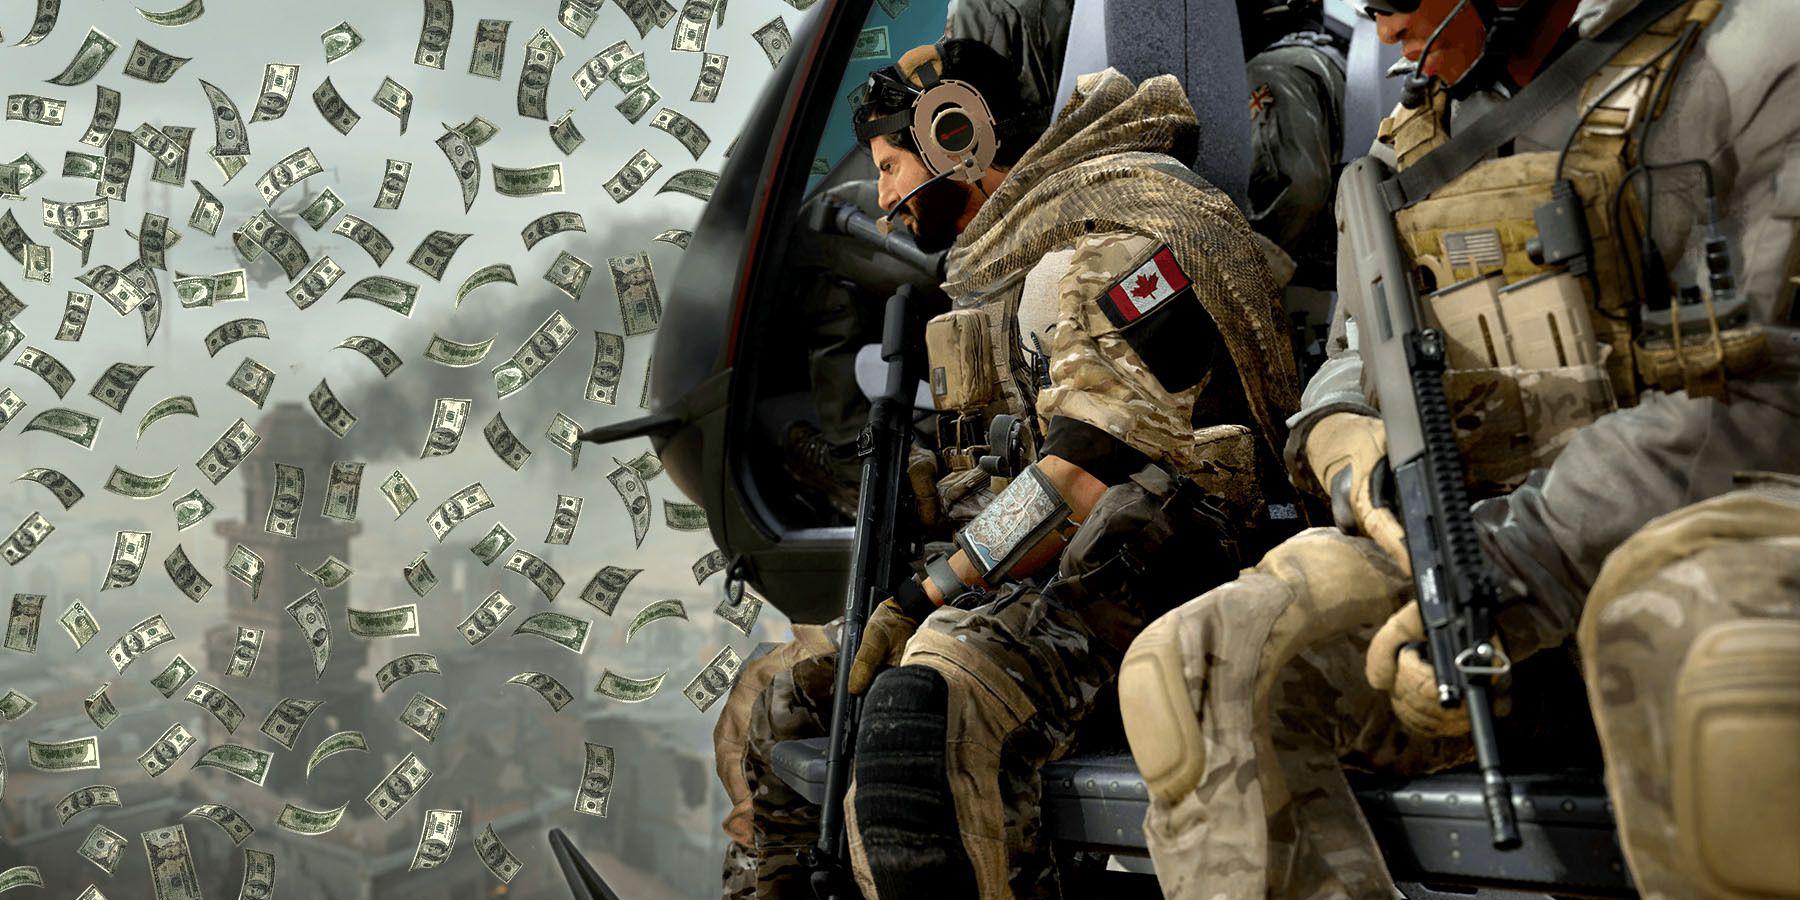 Expansão de Call of Duty: Modern Warfare 2 para 2023 pode adicionar armas clássicas ao lado de mapas